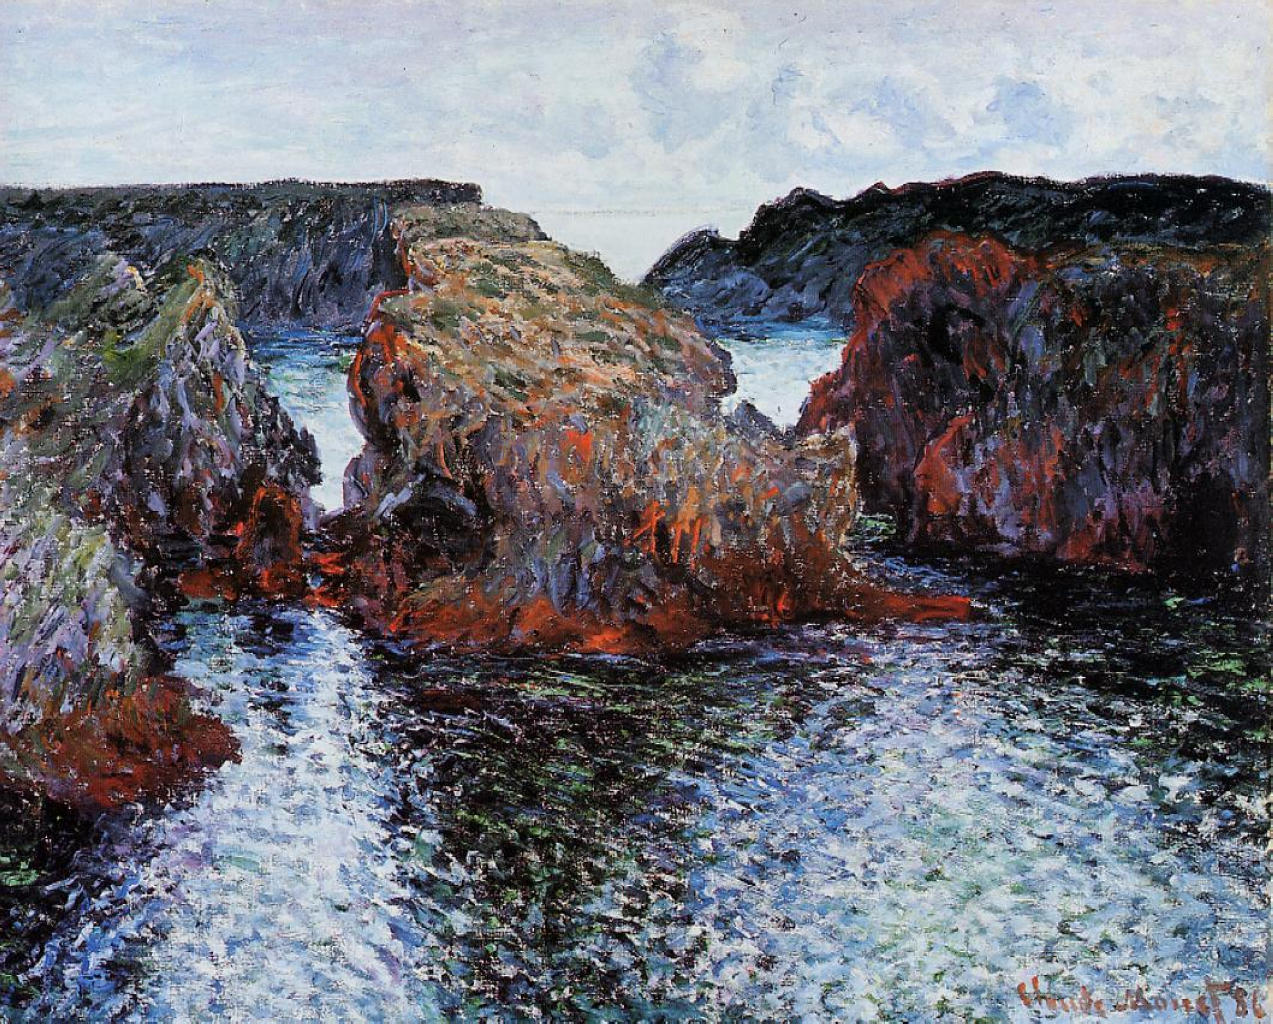 《贝勒岛的古尔法尔港的岩石》美术画作介绍